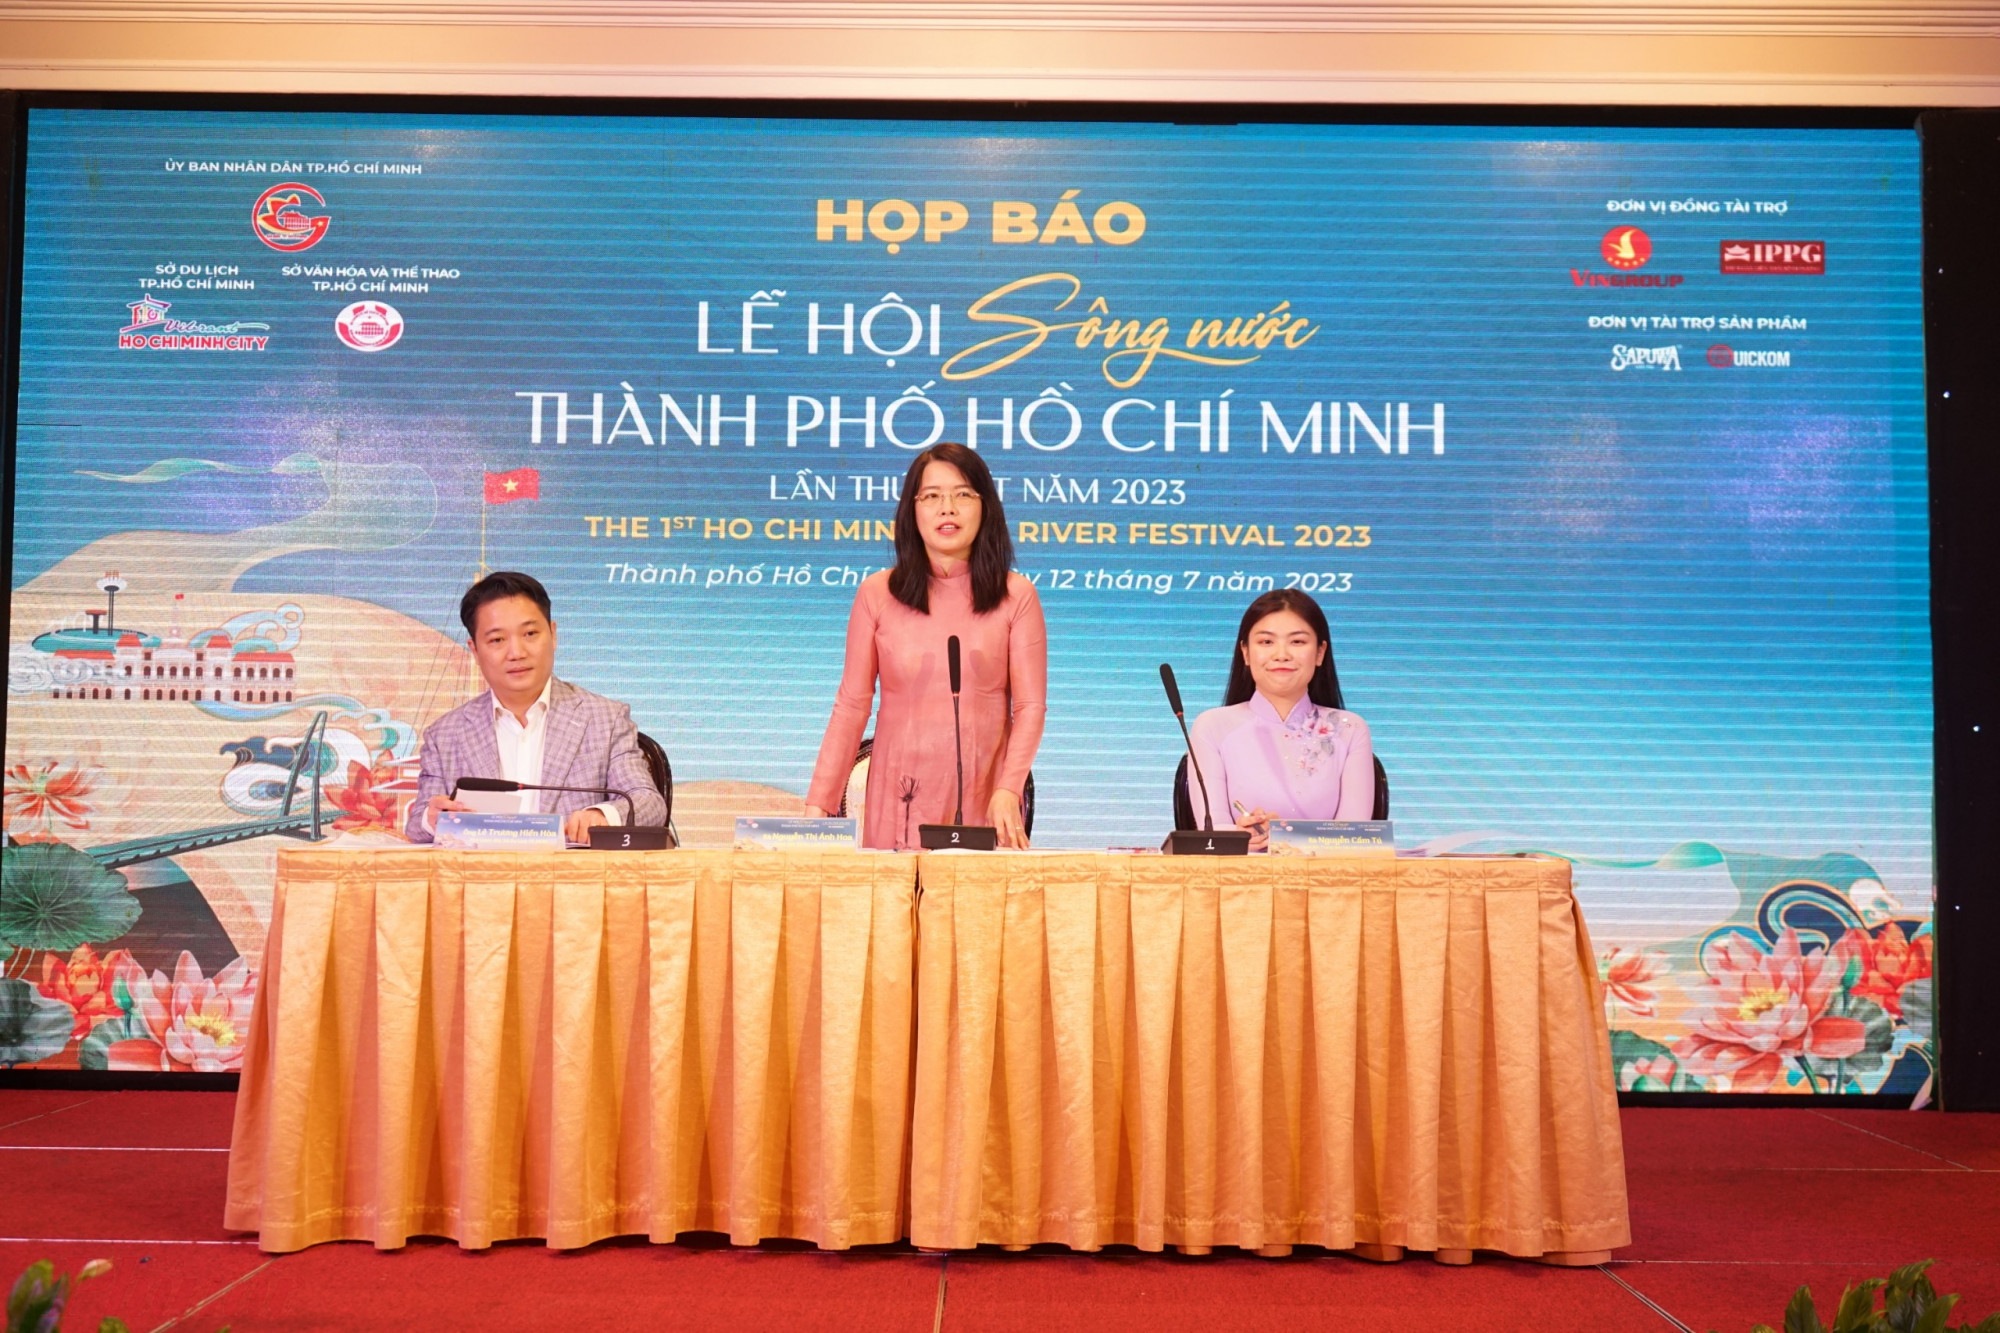 Bà Nguyễn Thị Ánh Hoa chia sẻ tại buổi họp báo Lễ Hội Sông Nước TPHCM năm 2023. Ảnh: Phong Du